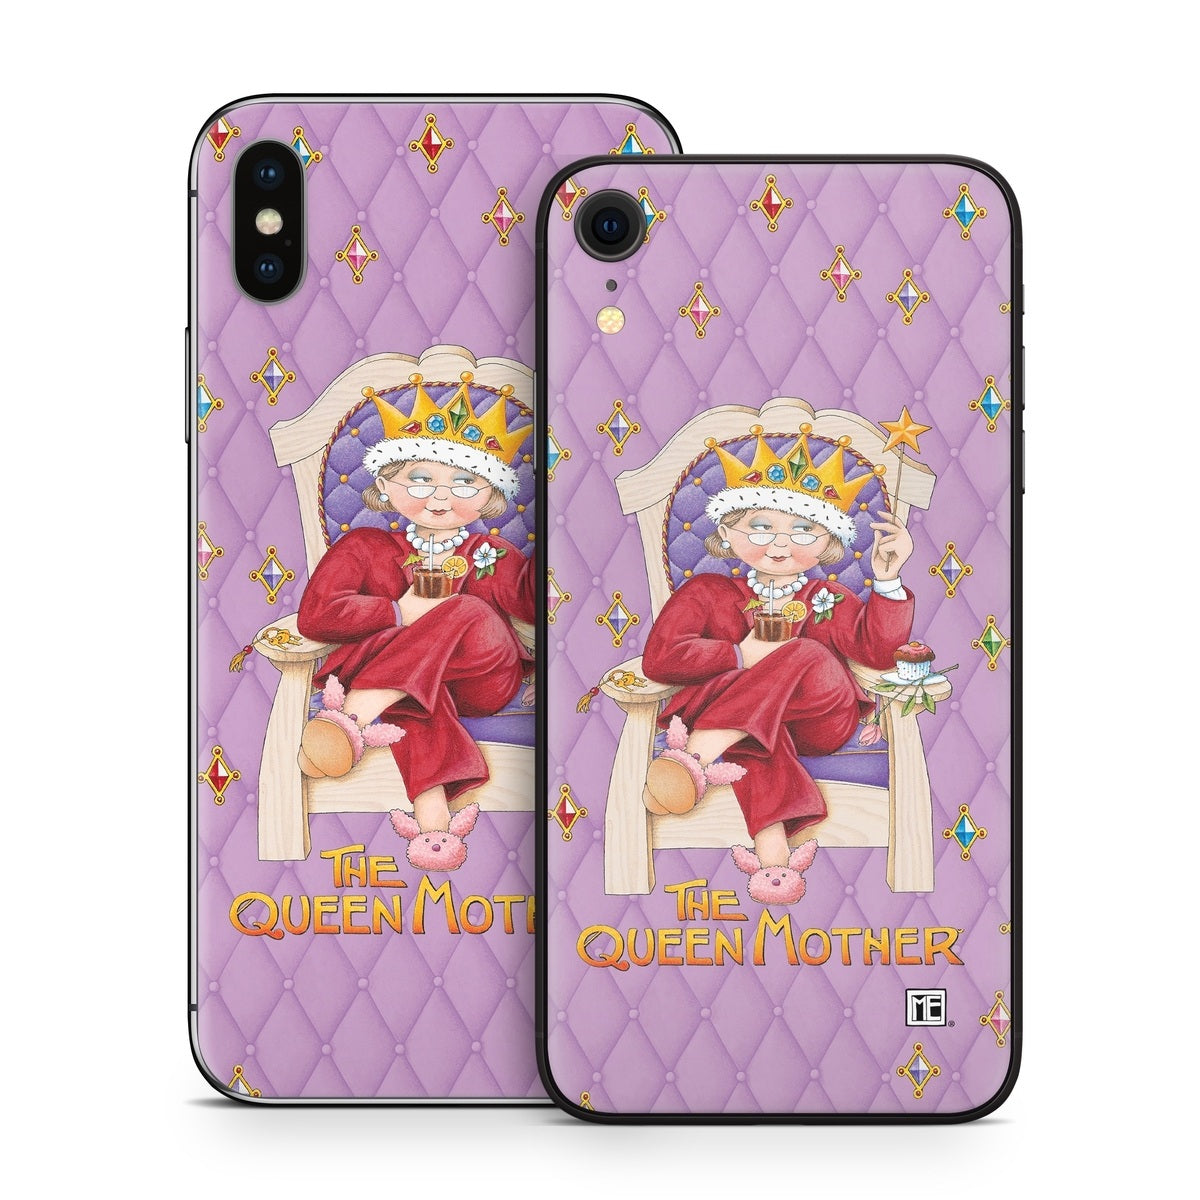 Queen Mother - Apple iPhone X Skin